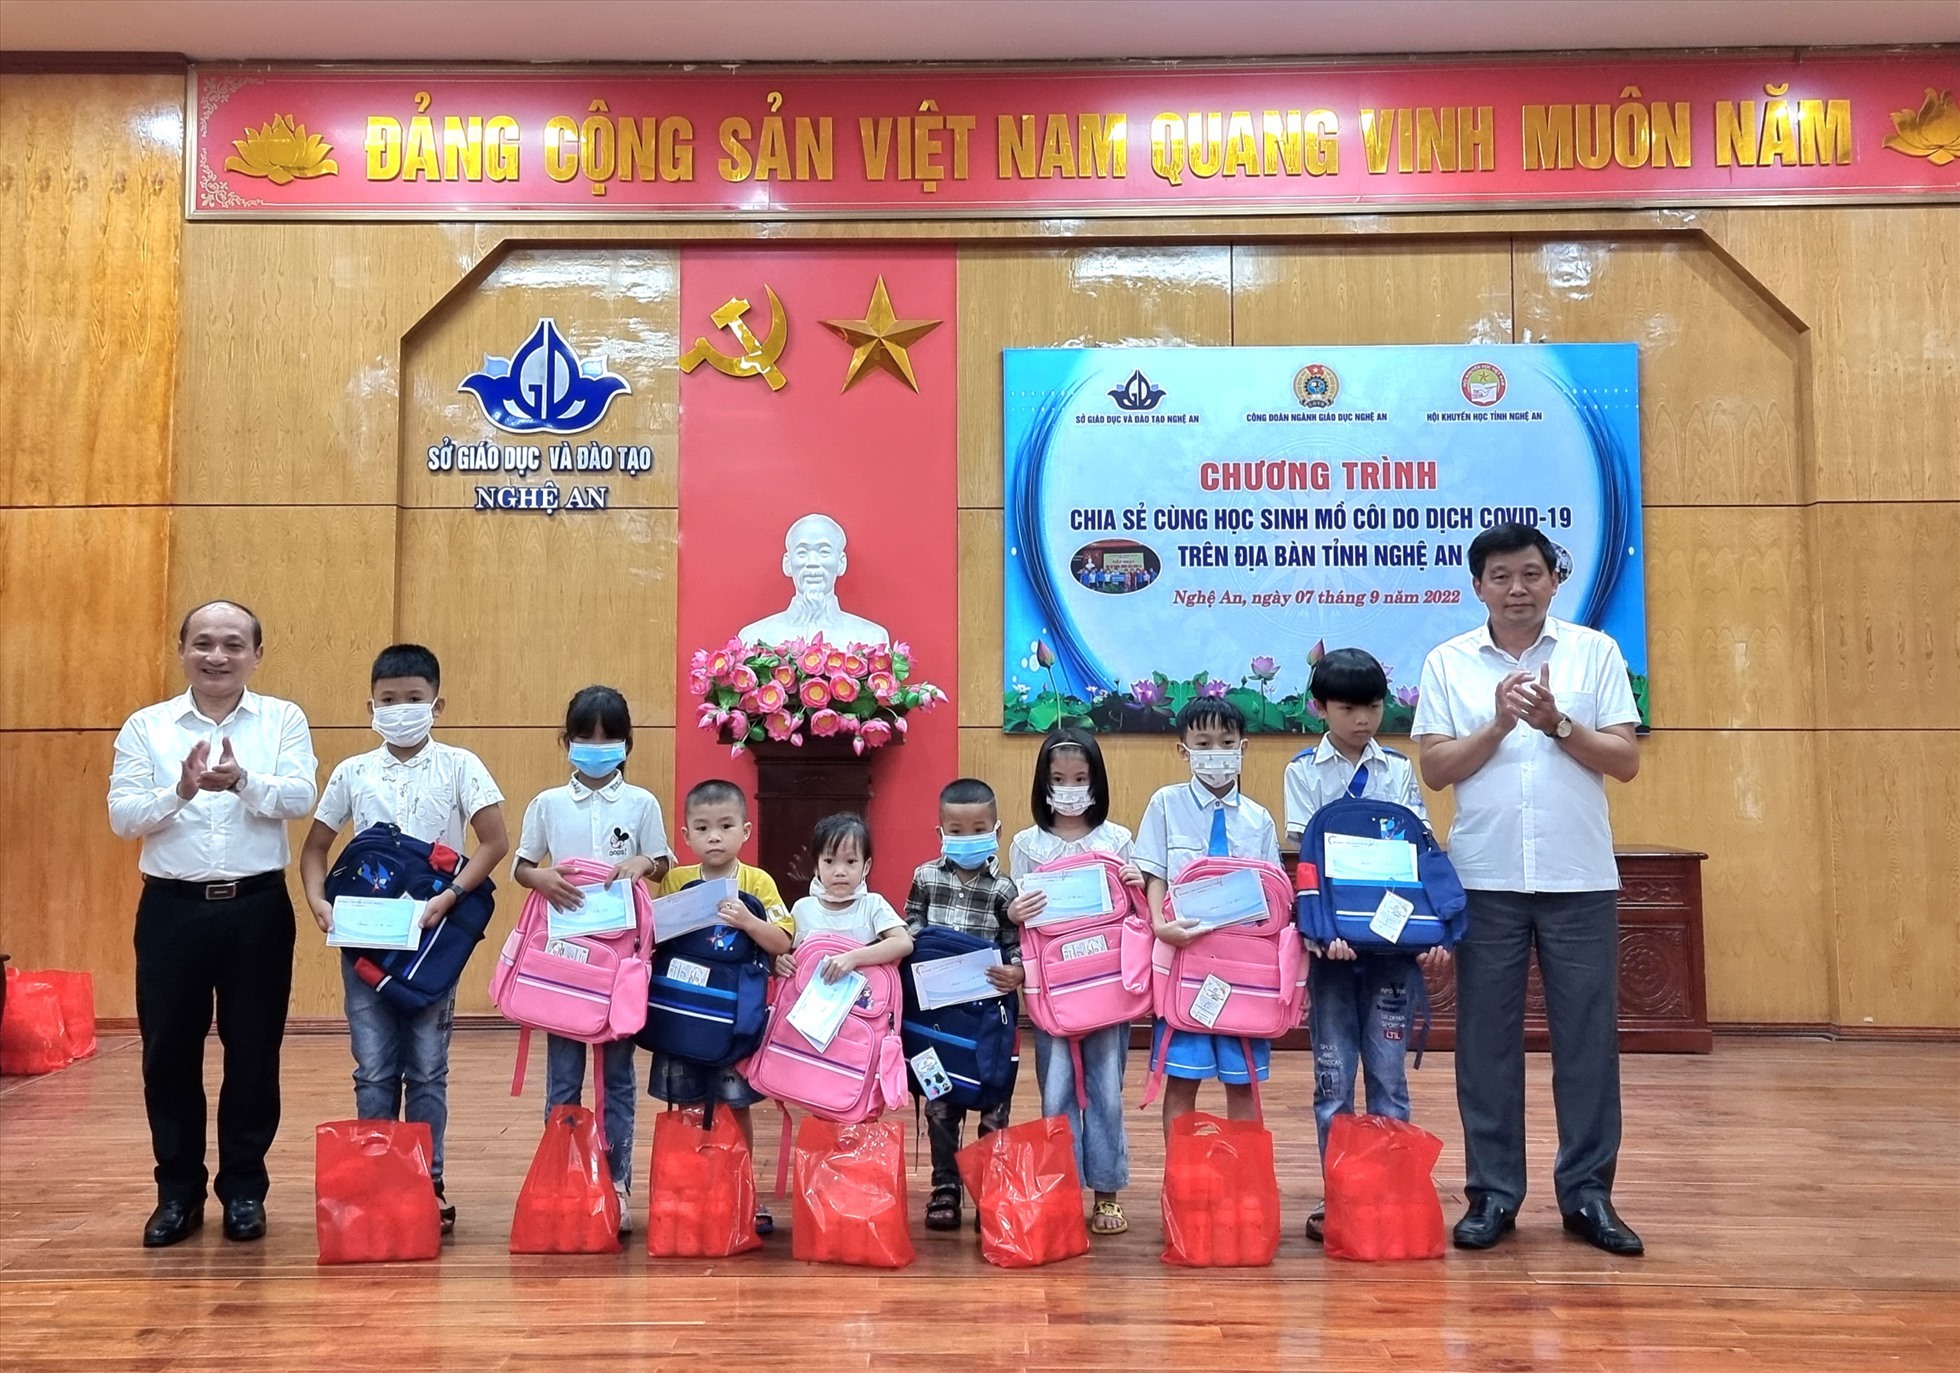 Chủ tịch Hội Khuyến học và Liên đoàn lao động tỉnh Nghệ An trao quà cho các em học sinh. Ảnh: QĐ